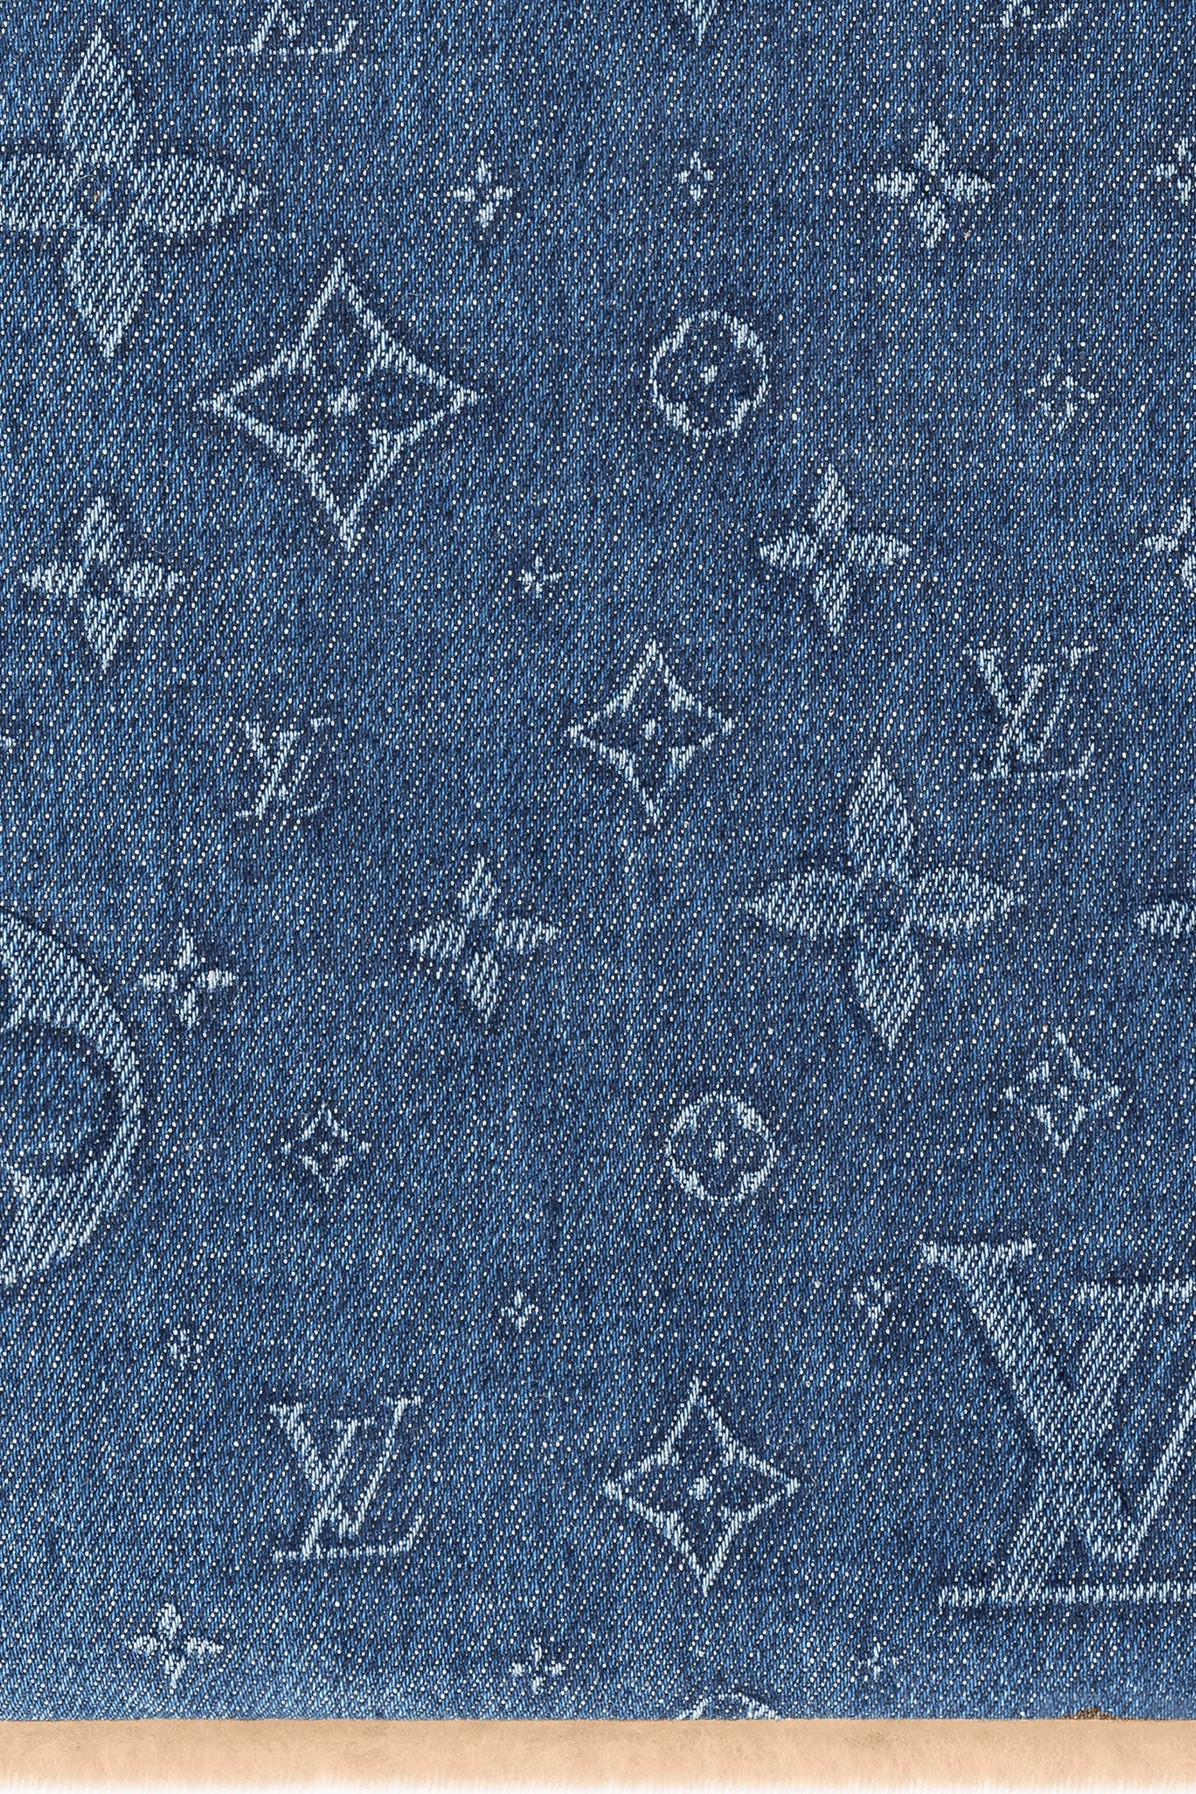 Louis Vuitton Monogram Constellation Scarf, Blue, One Size